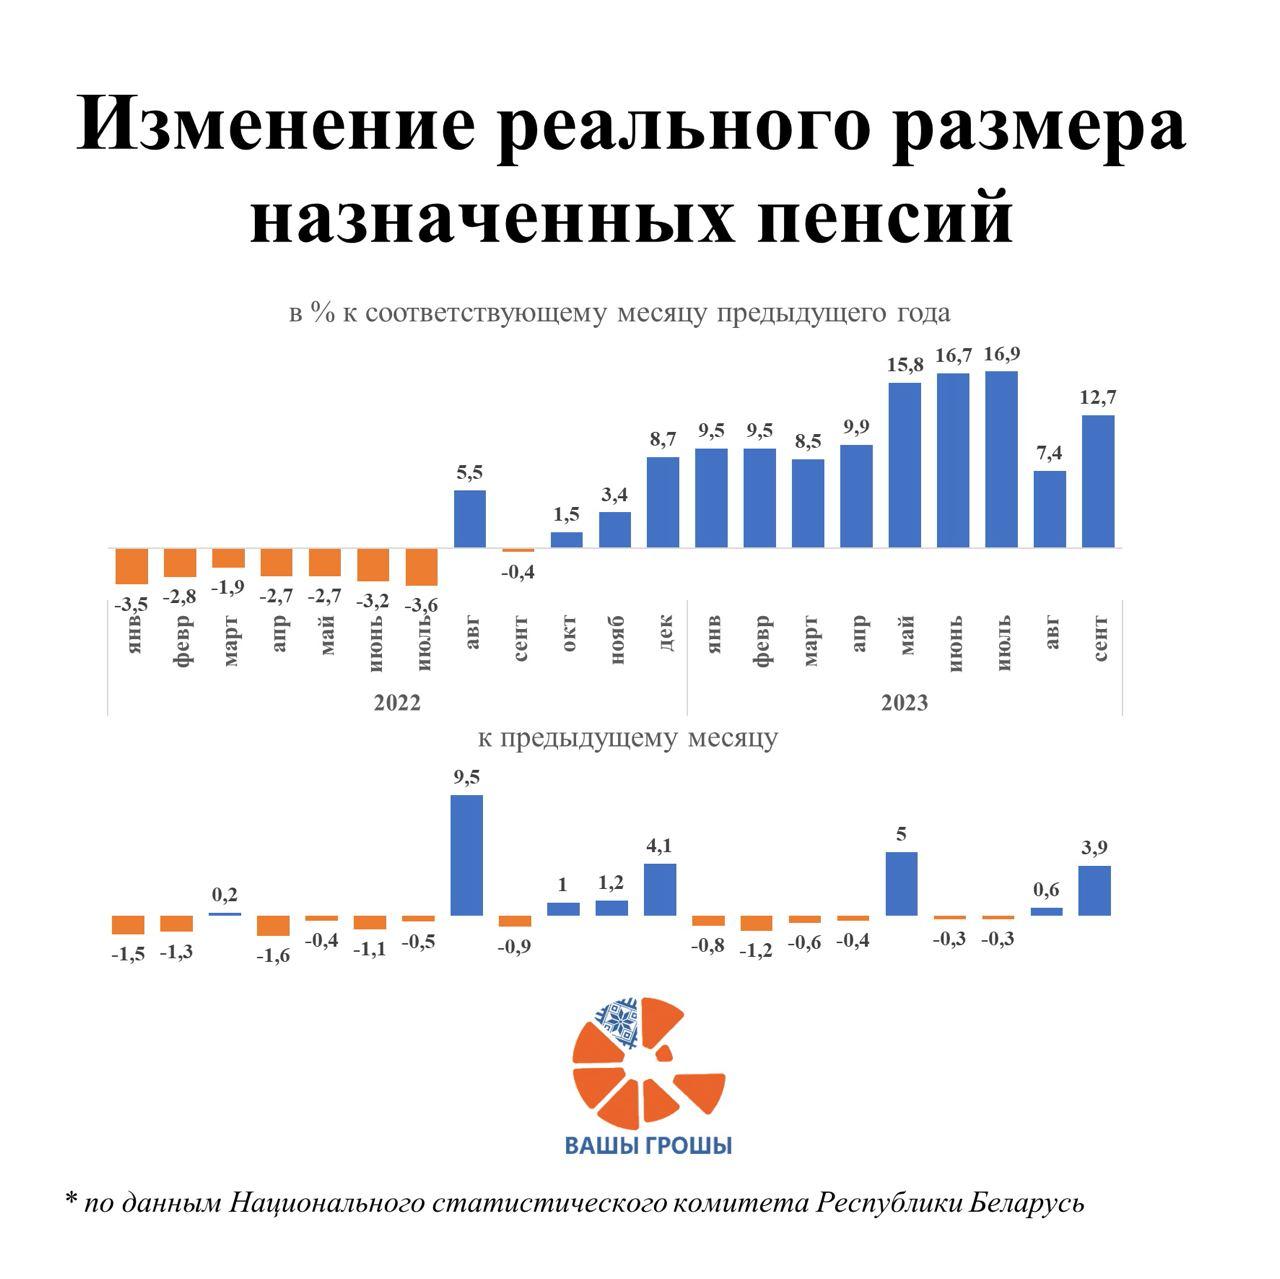 Реальные пенсии в Беларуси растут благодаря помощи из бюджета. Но что будет дальше?